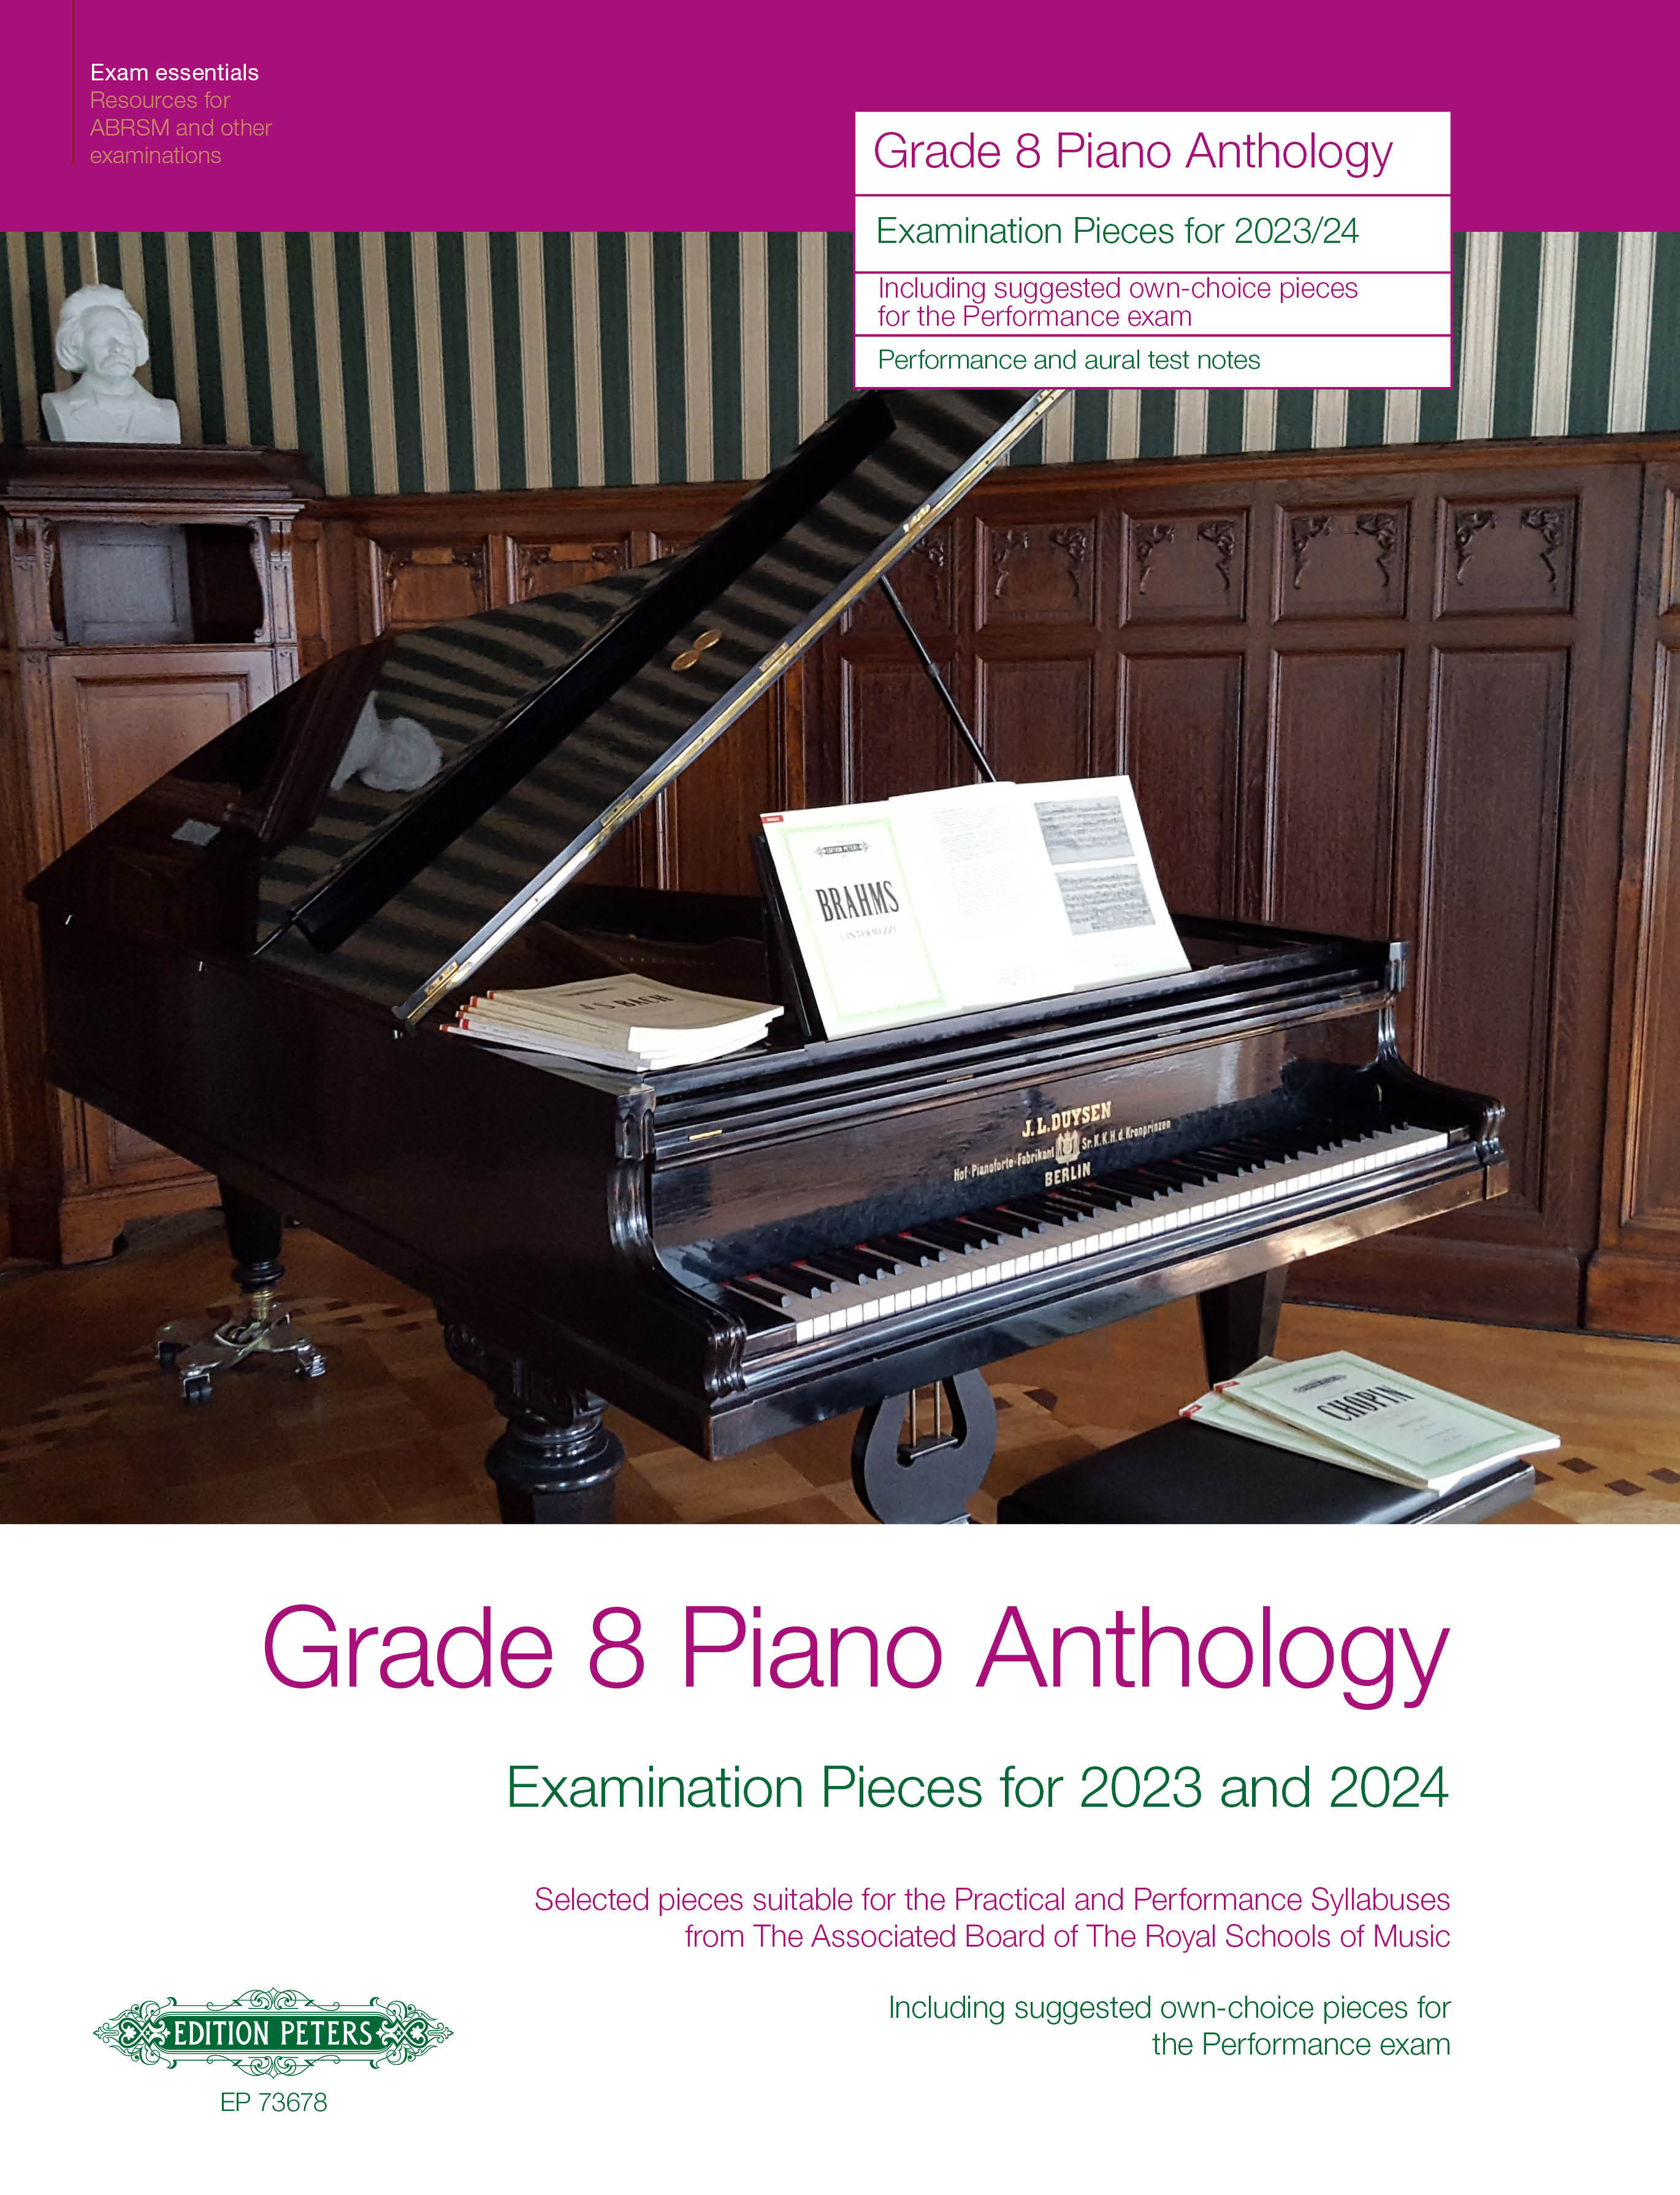 (8折 20% Off) Grade 8 Piano Anthology: Examination Pieces for 2023 and 2024